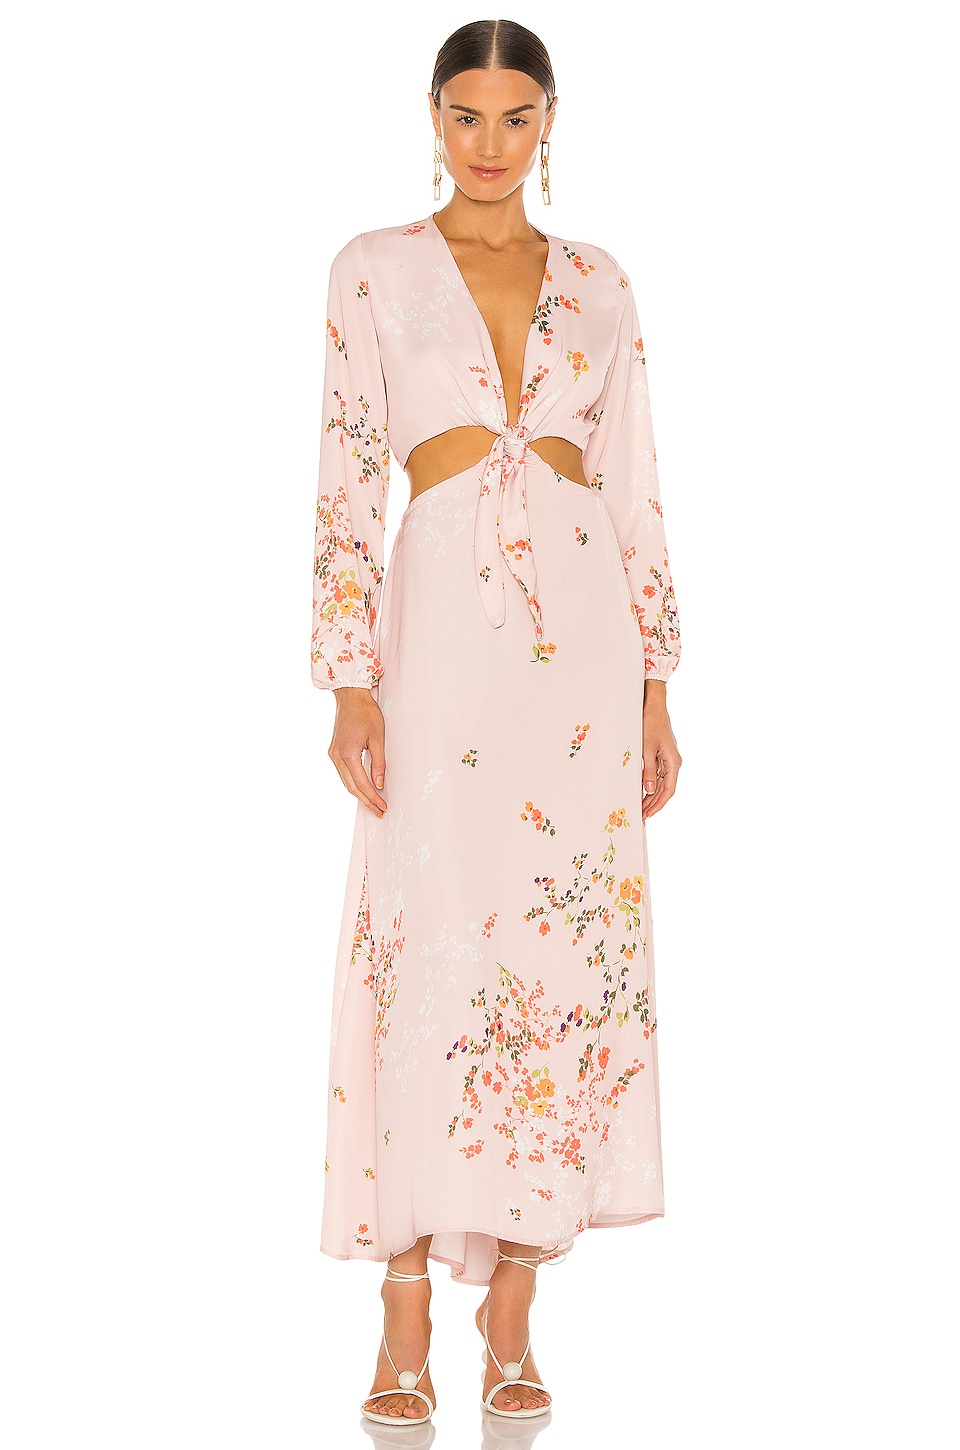 RESA Noelle Dress in Pink Floral | REVOLVE